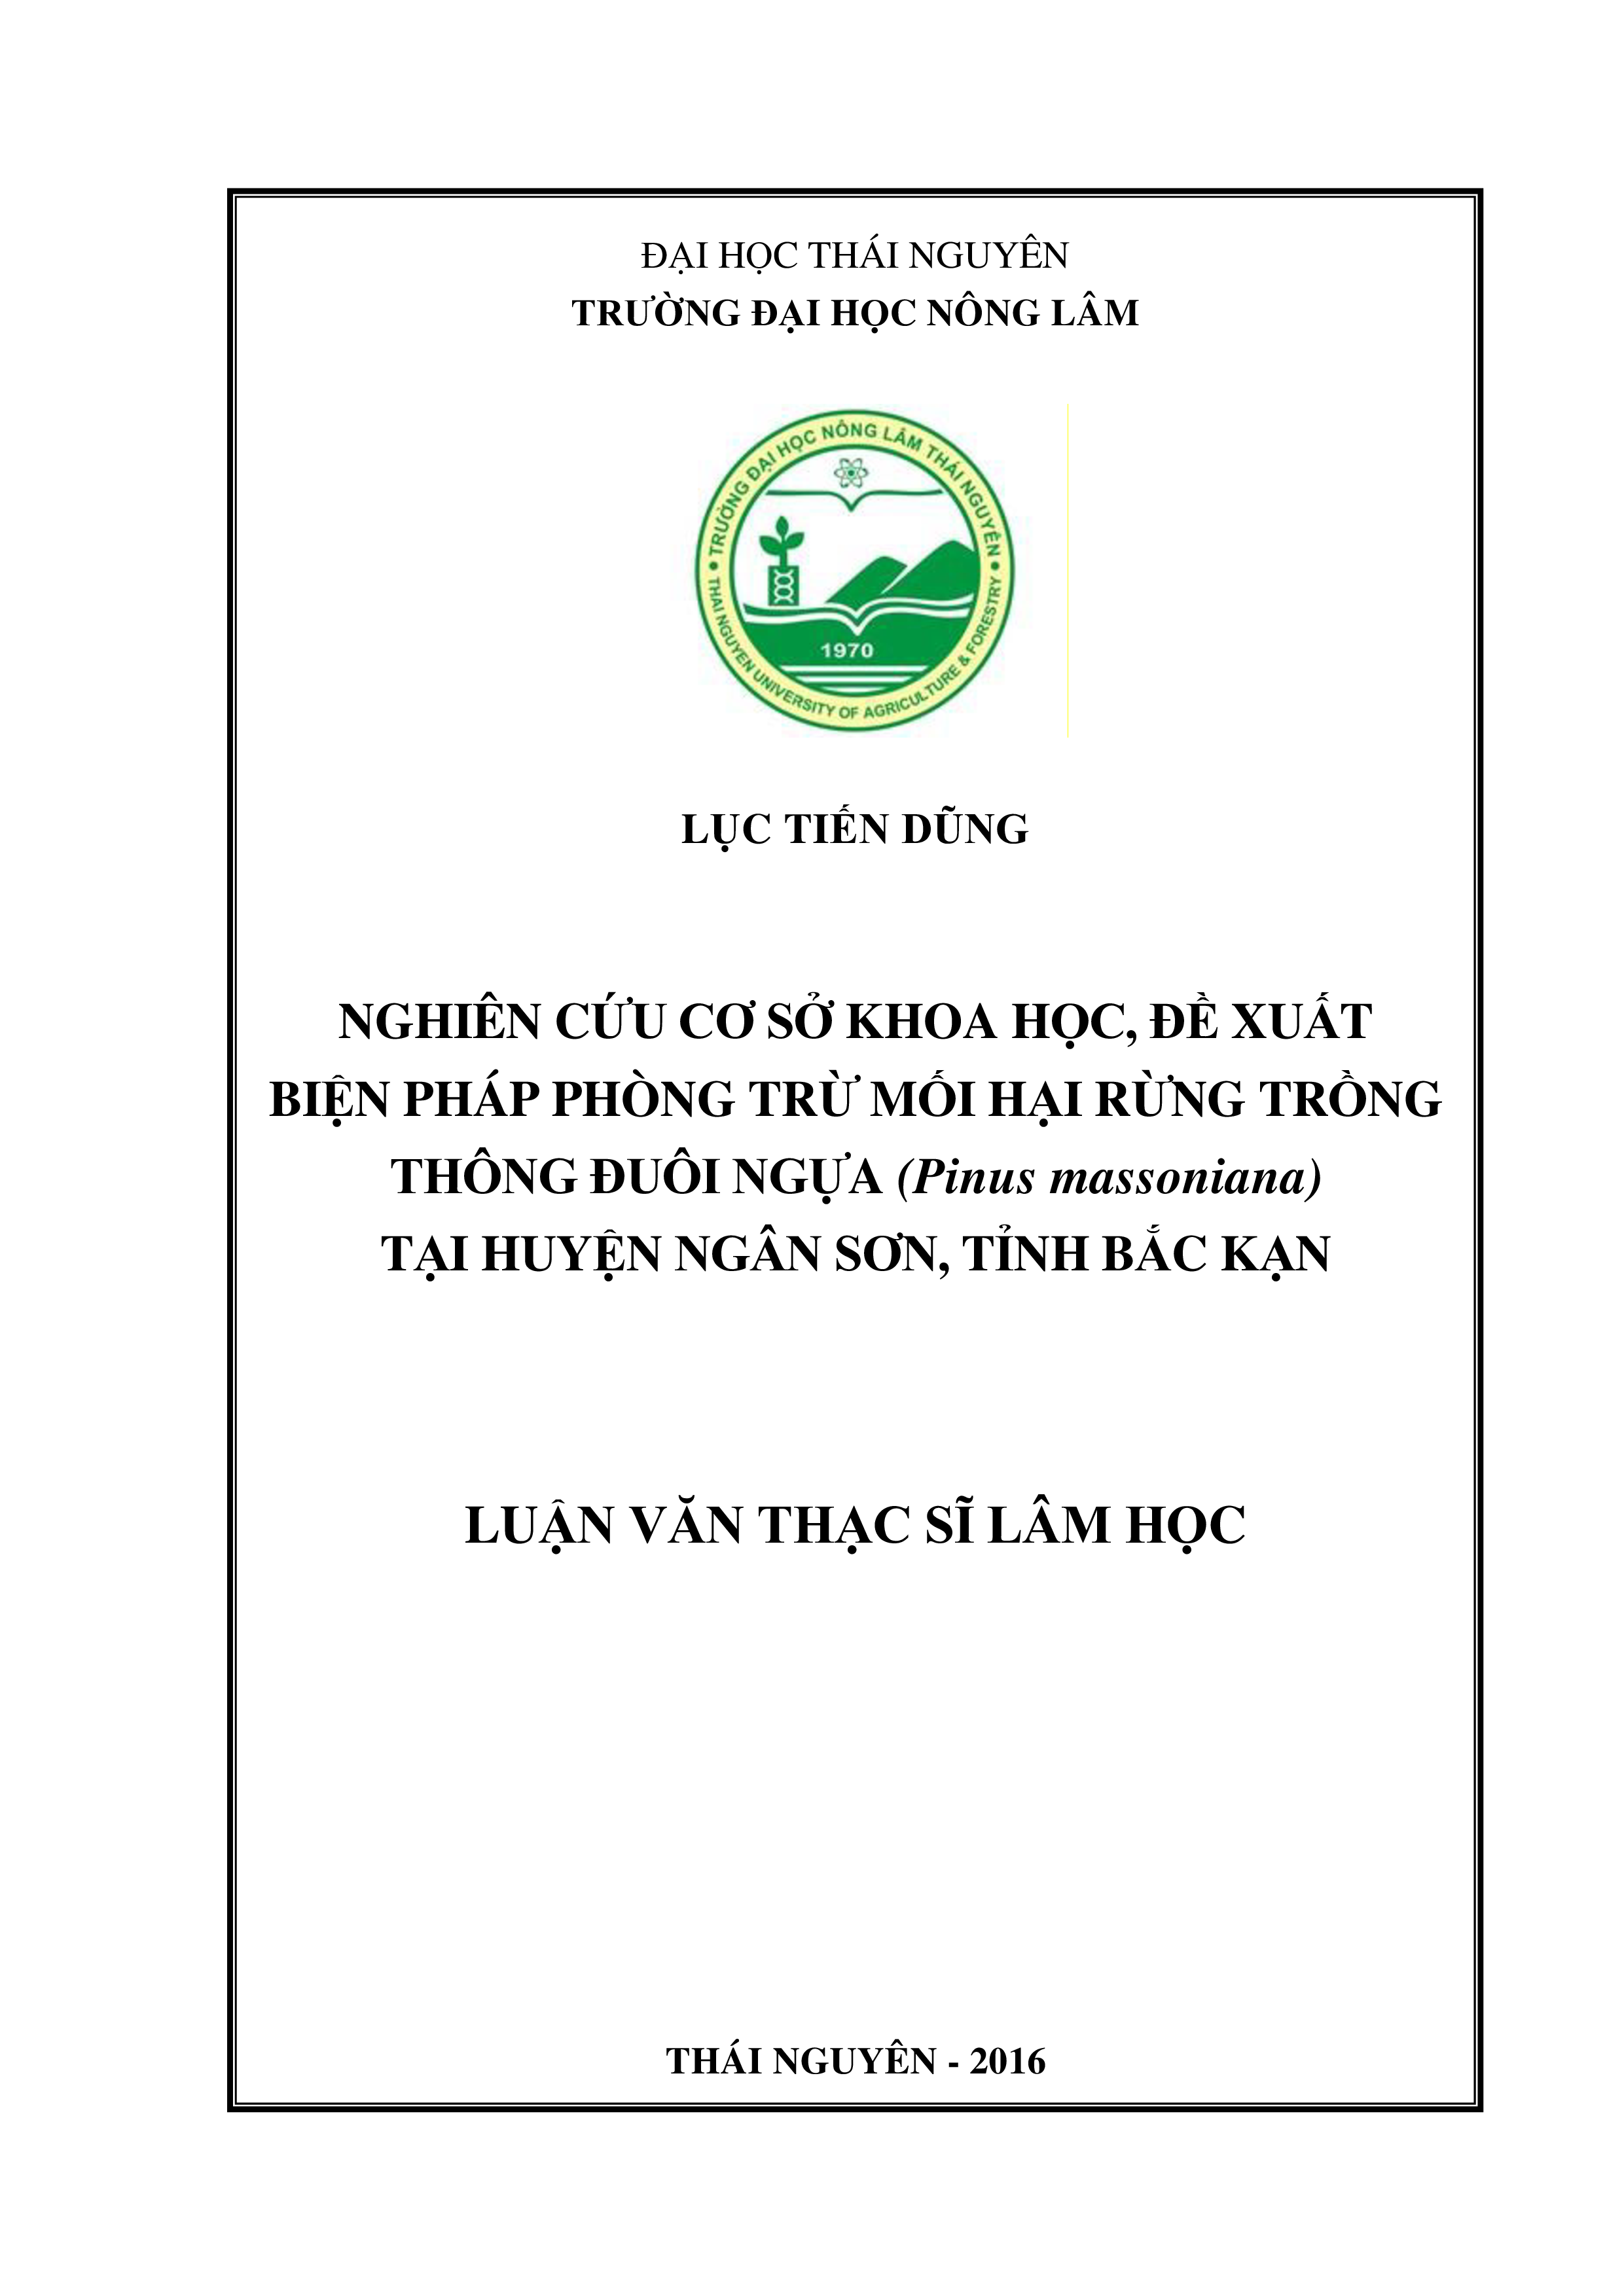 Nghiên cứu cơ sở  khoa học, đề  xuất biện pháp phòng trừ  Mối hại rừng trồng  Thông đuôi ngựa (Pinus massoniana) tại huyện Ngân Sơn - tỉnh Bắc Kạn